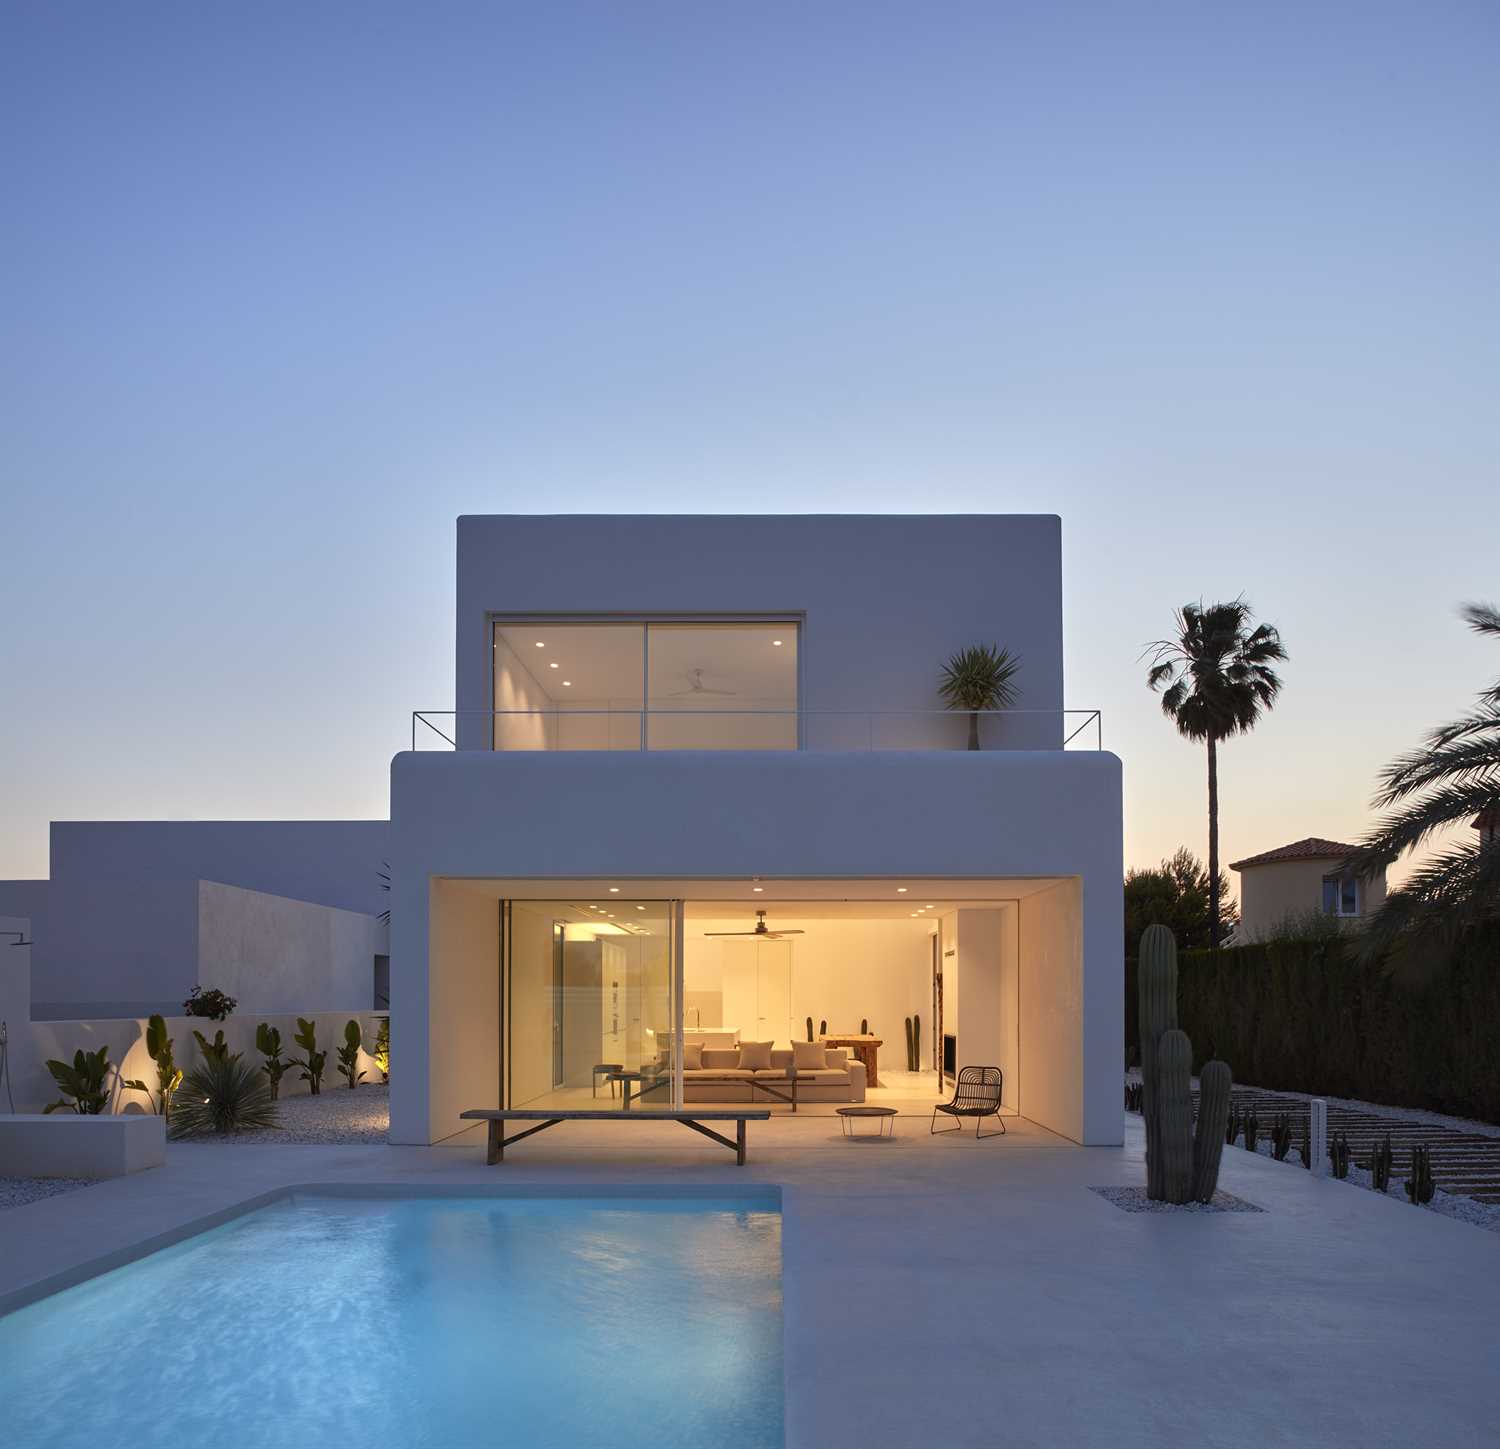 Witte microcement op de gevel en het zwembad van een modern huis.